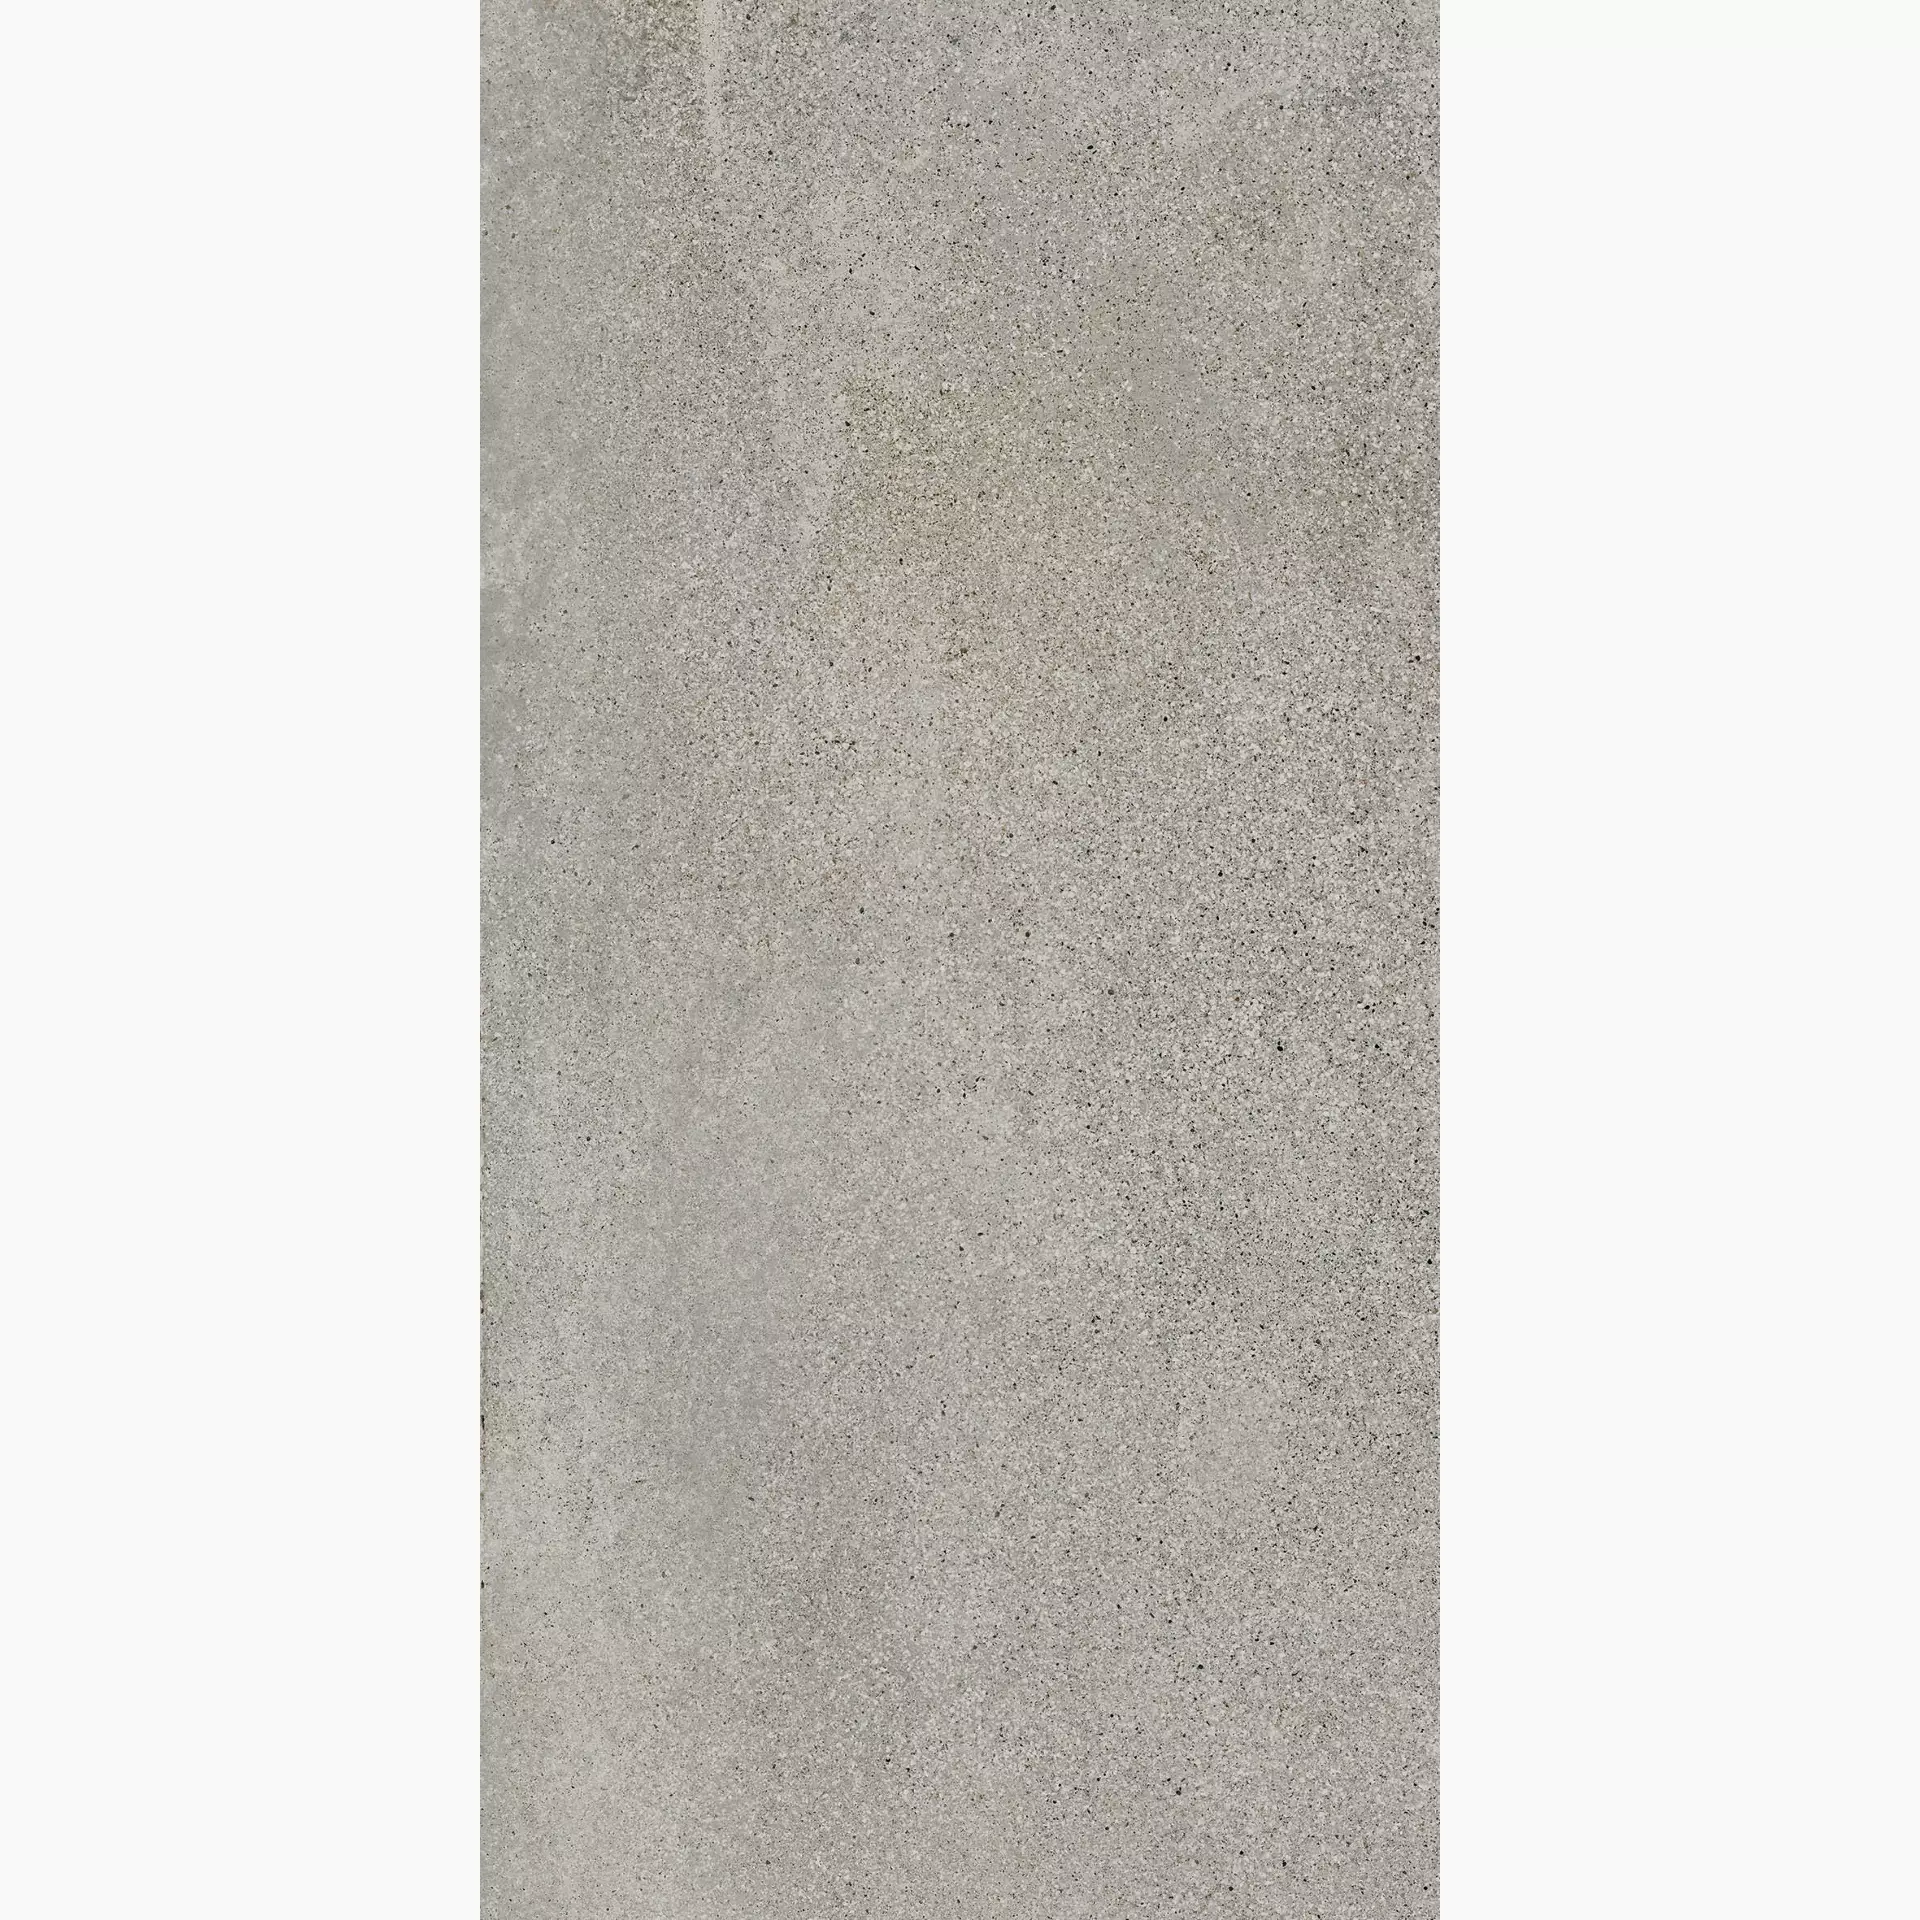 ABK Blend Concrete Ash Naturale Ash PF60008258 natur 30x60cm rektifiziert 8,5mm